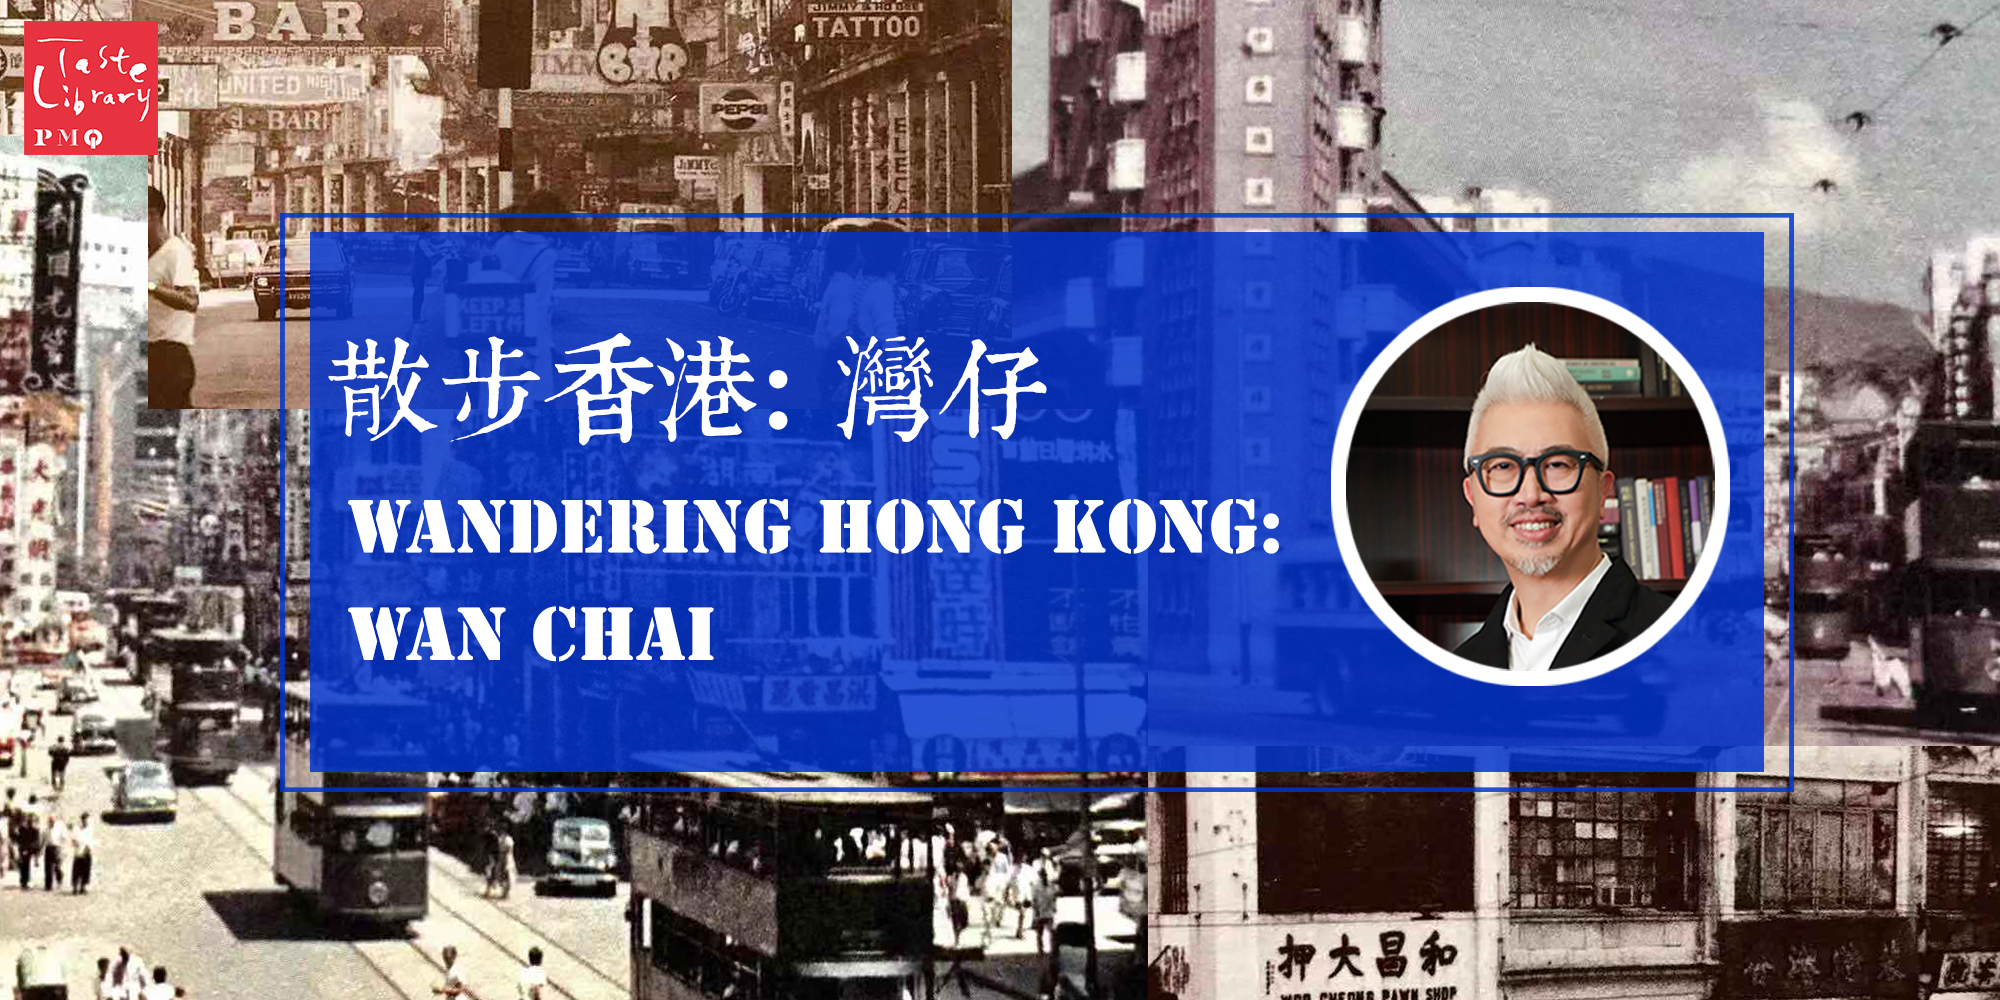 散步香港: 灣仔 Wandering Hong Kong: Wan Chai